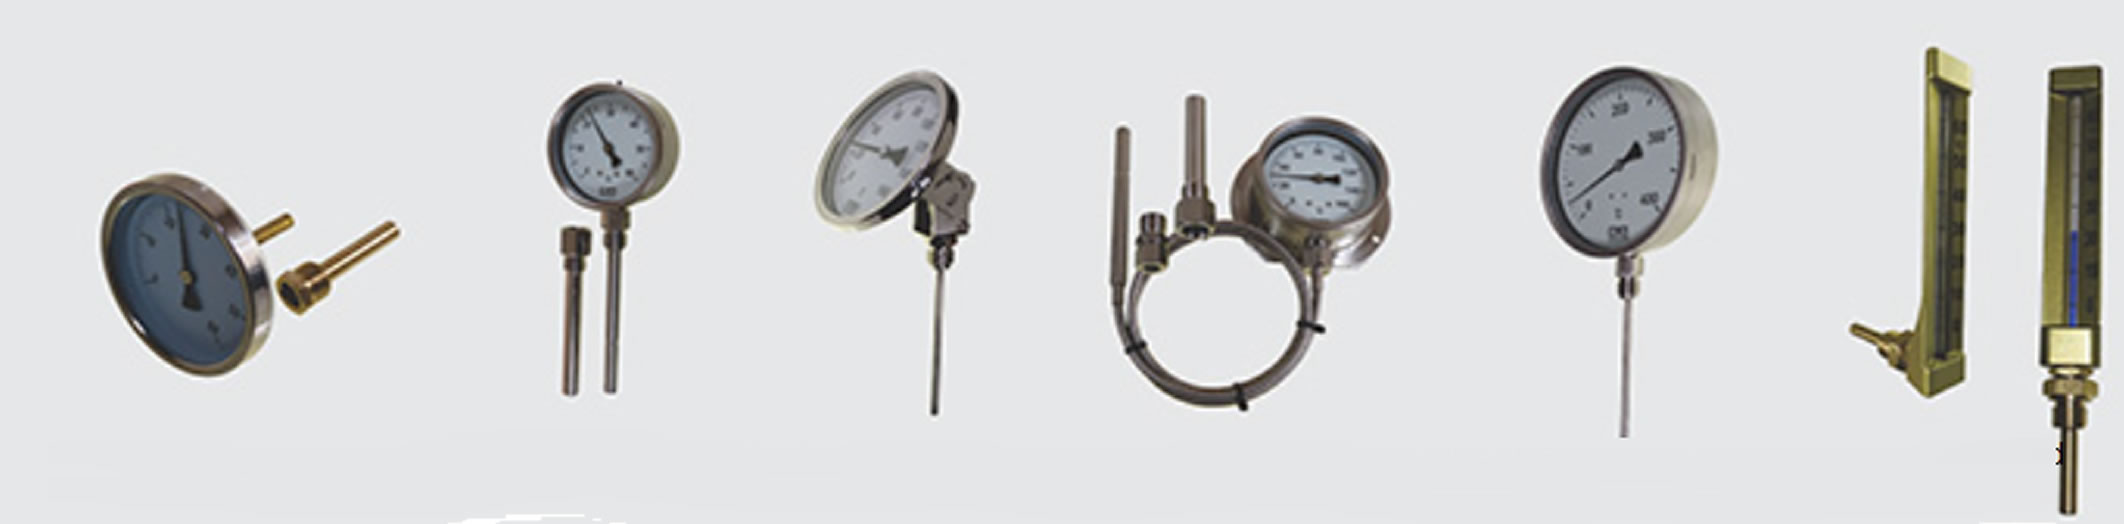 Industrial Temperature gauges